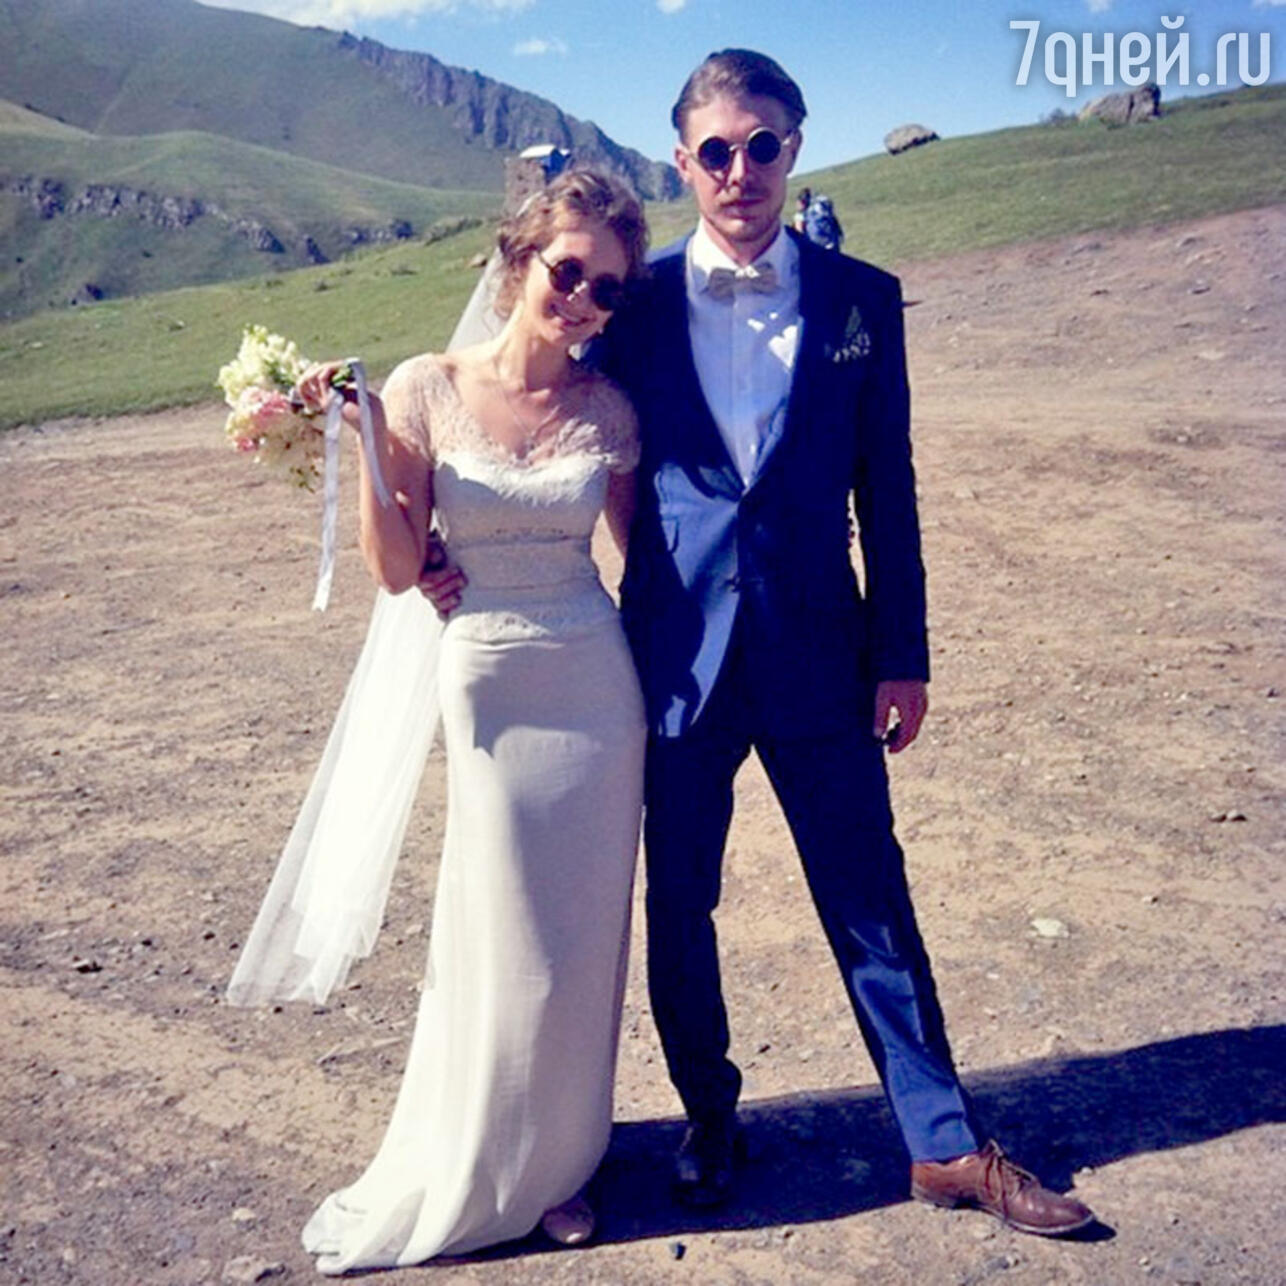 Актеры Никита Ефремов и Яна Гладких сыграли свадьбу.